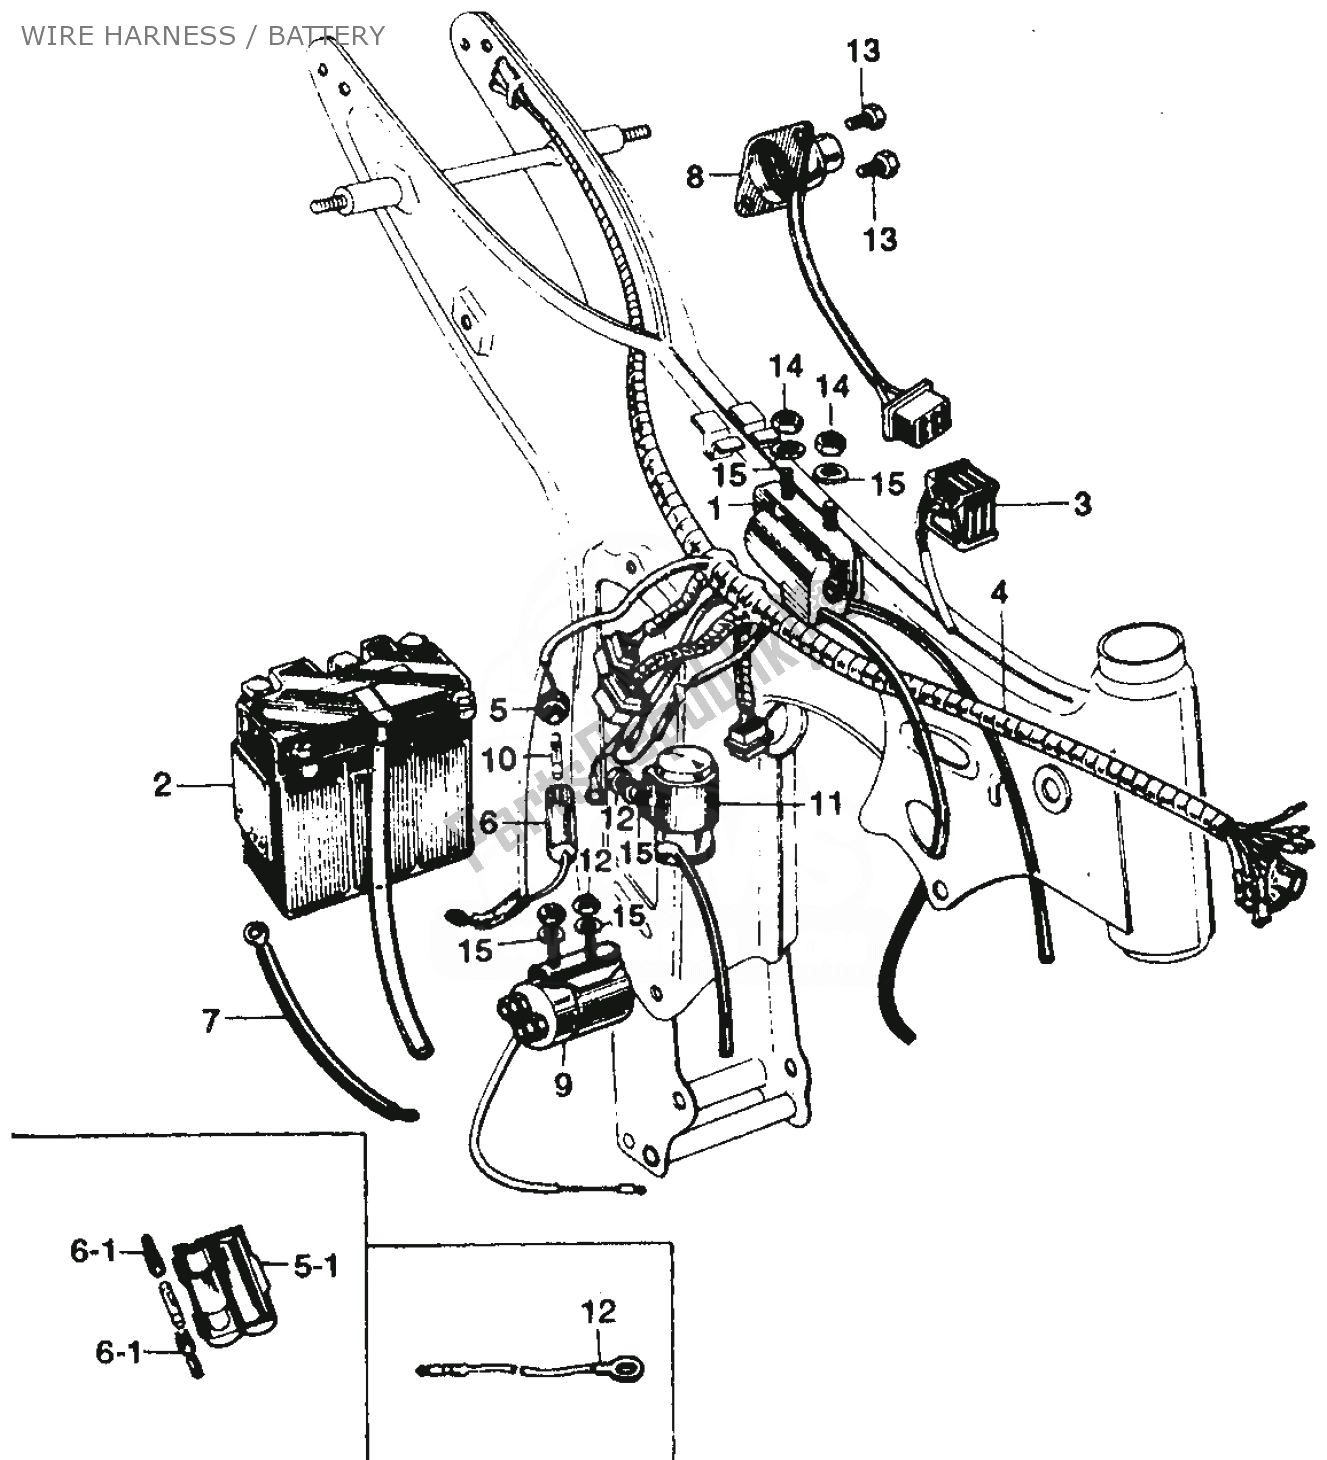 Alle onderdelen voor de Wire Harness / Battery van de Honda SS 125 1967